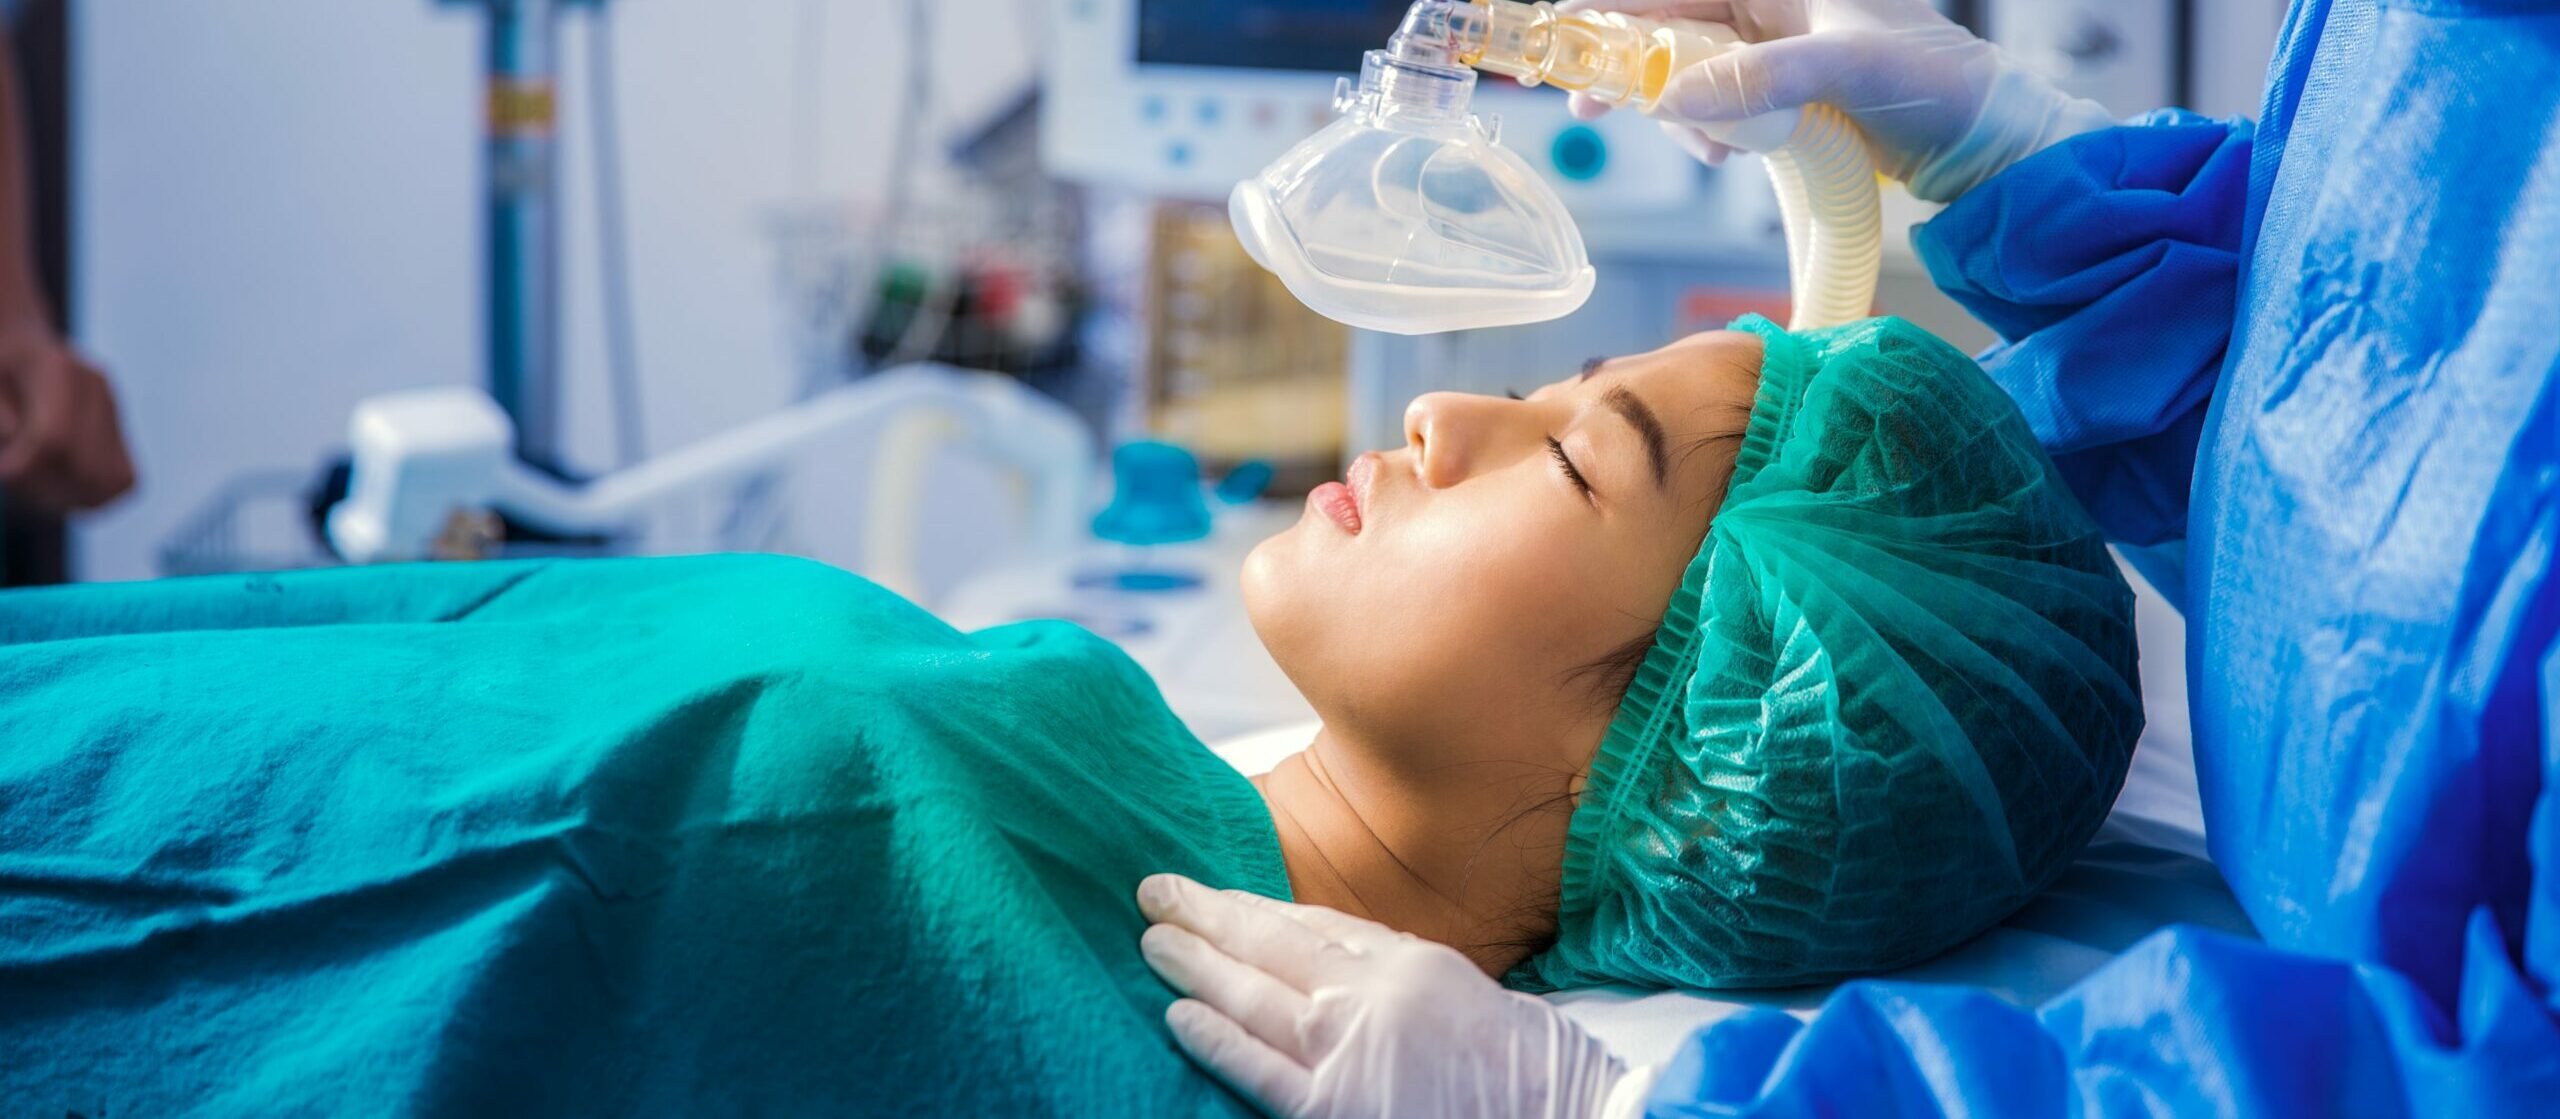 Anestesia geral como funciona, tipos, quanto tempo dura e riscos Vitat